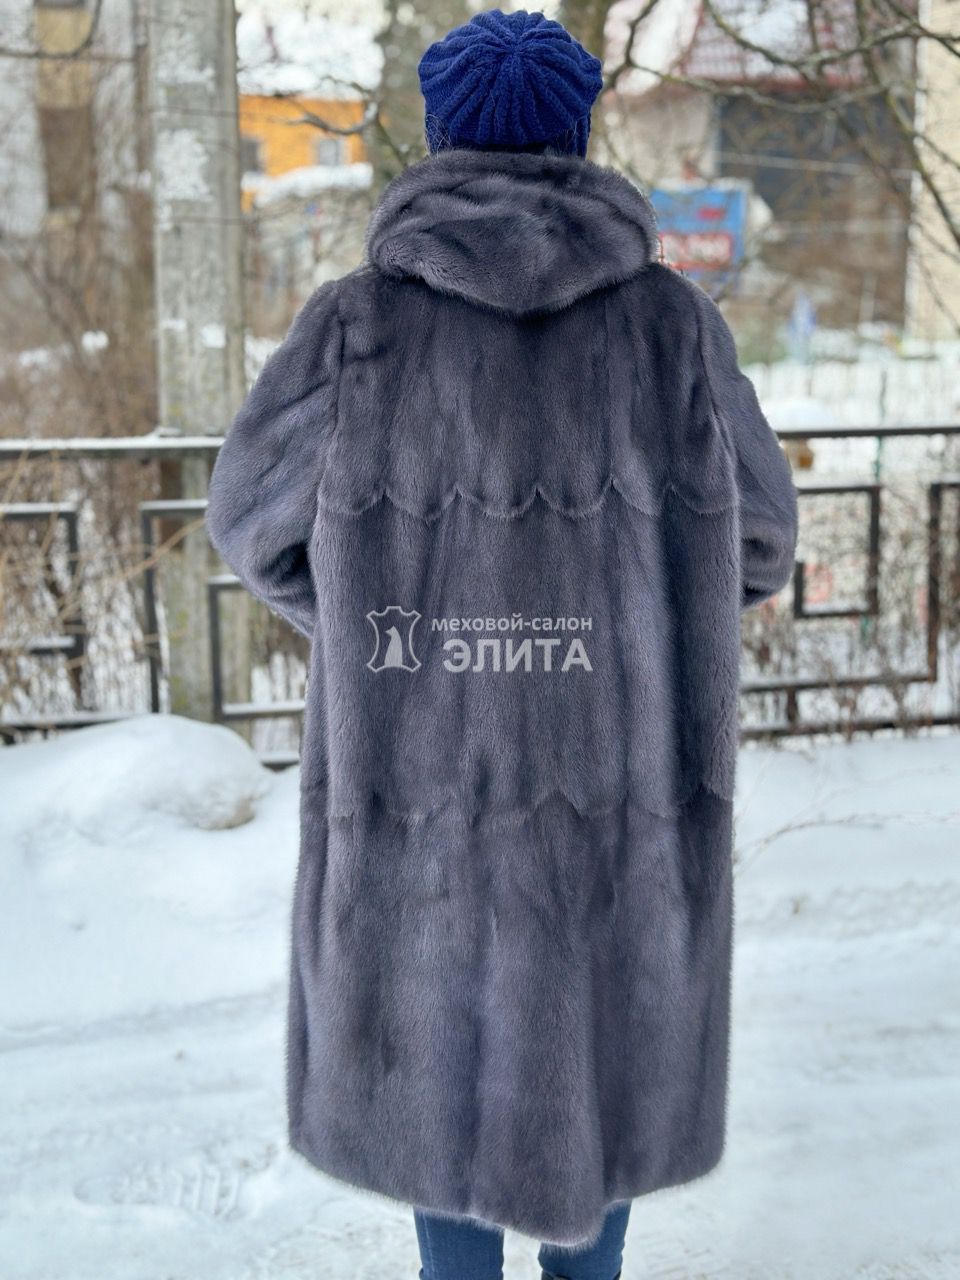 Пальто из норки м. S-1849 р-р 50-54, цена 189000 рублей в интернет-магазине кожи и меха ЭЛИТА. Вид 2